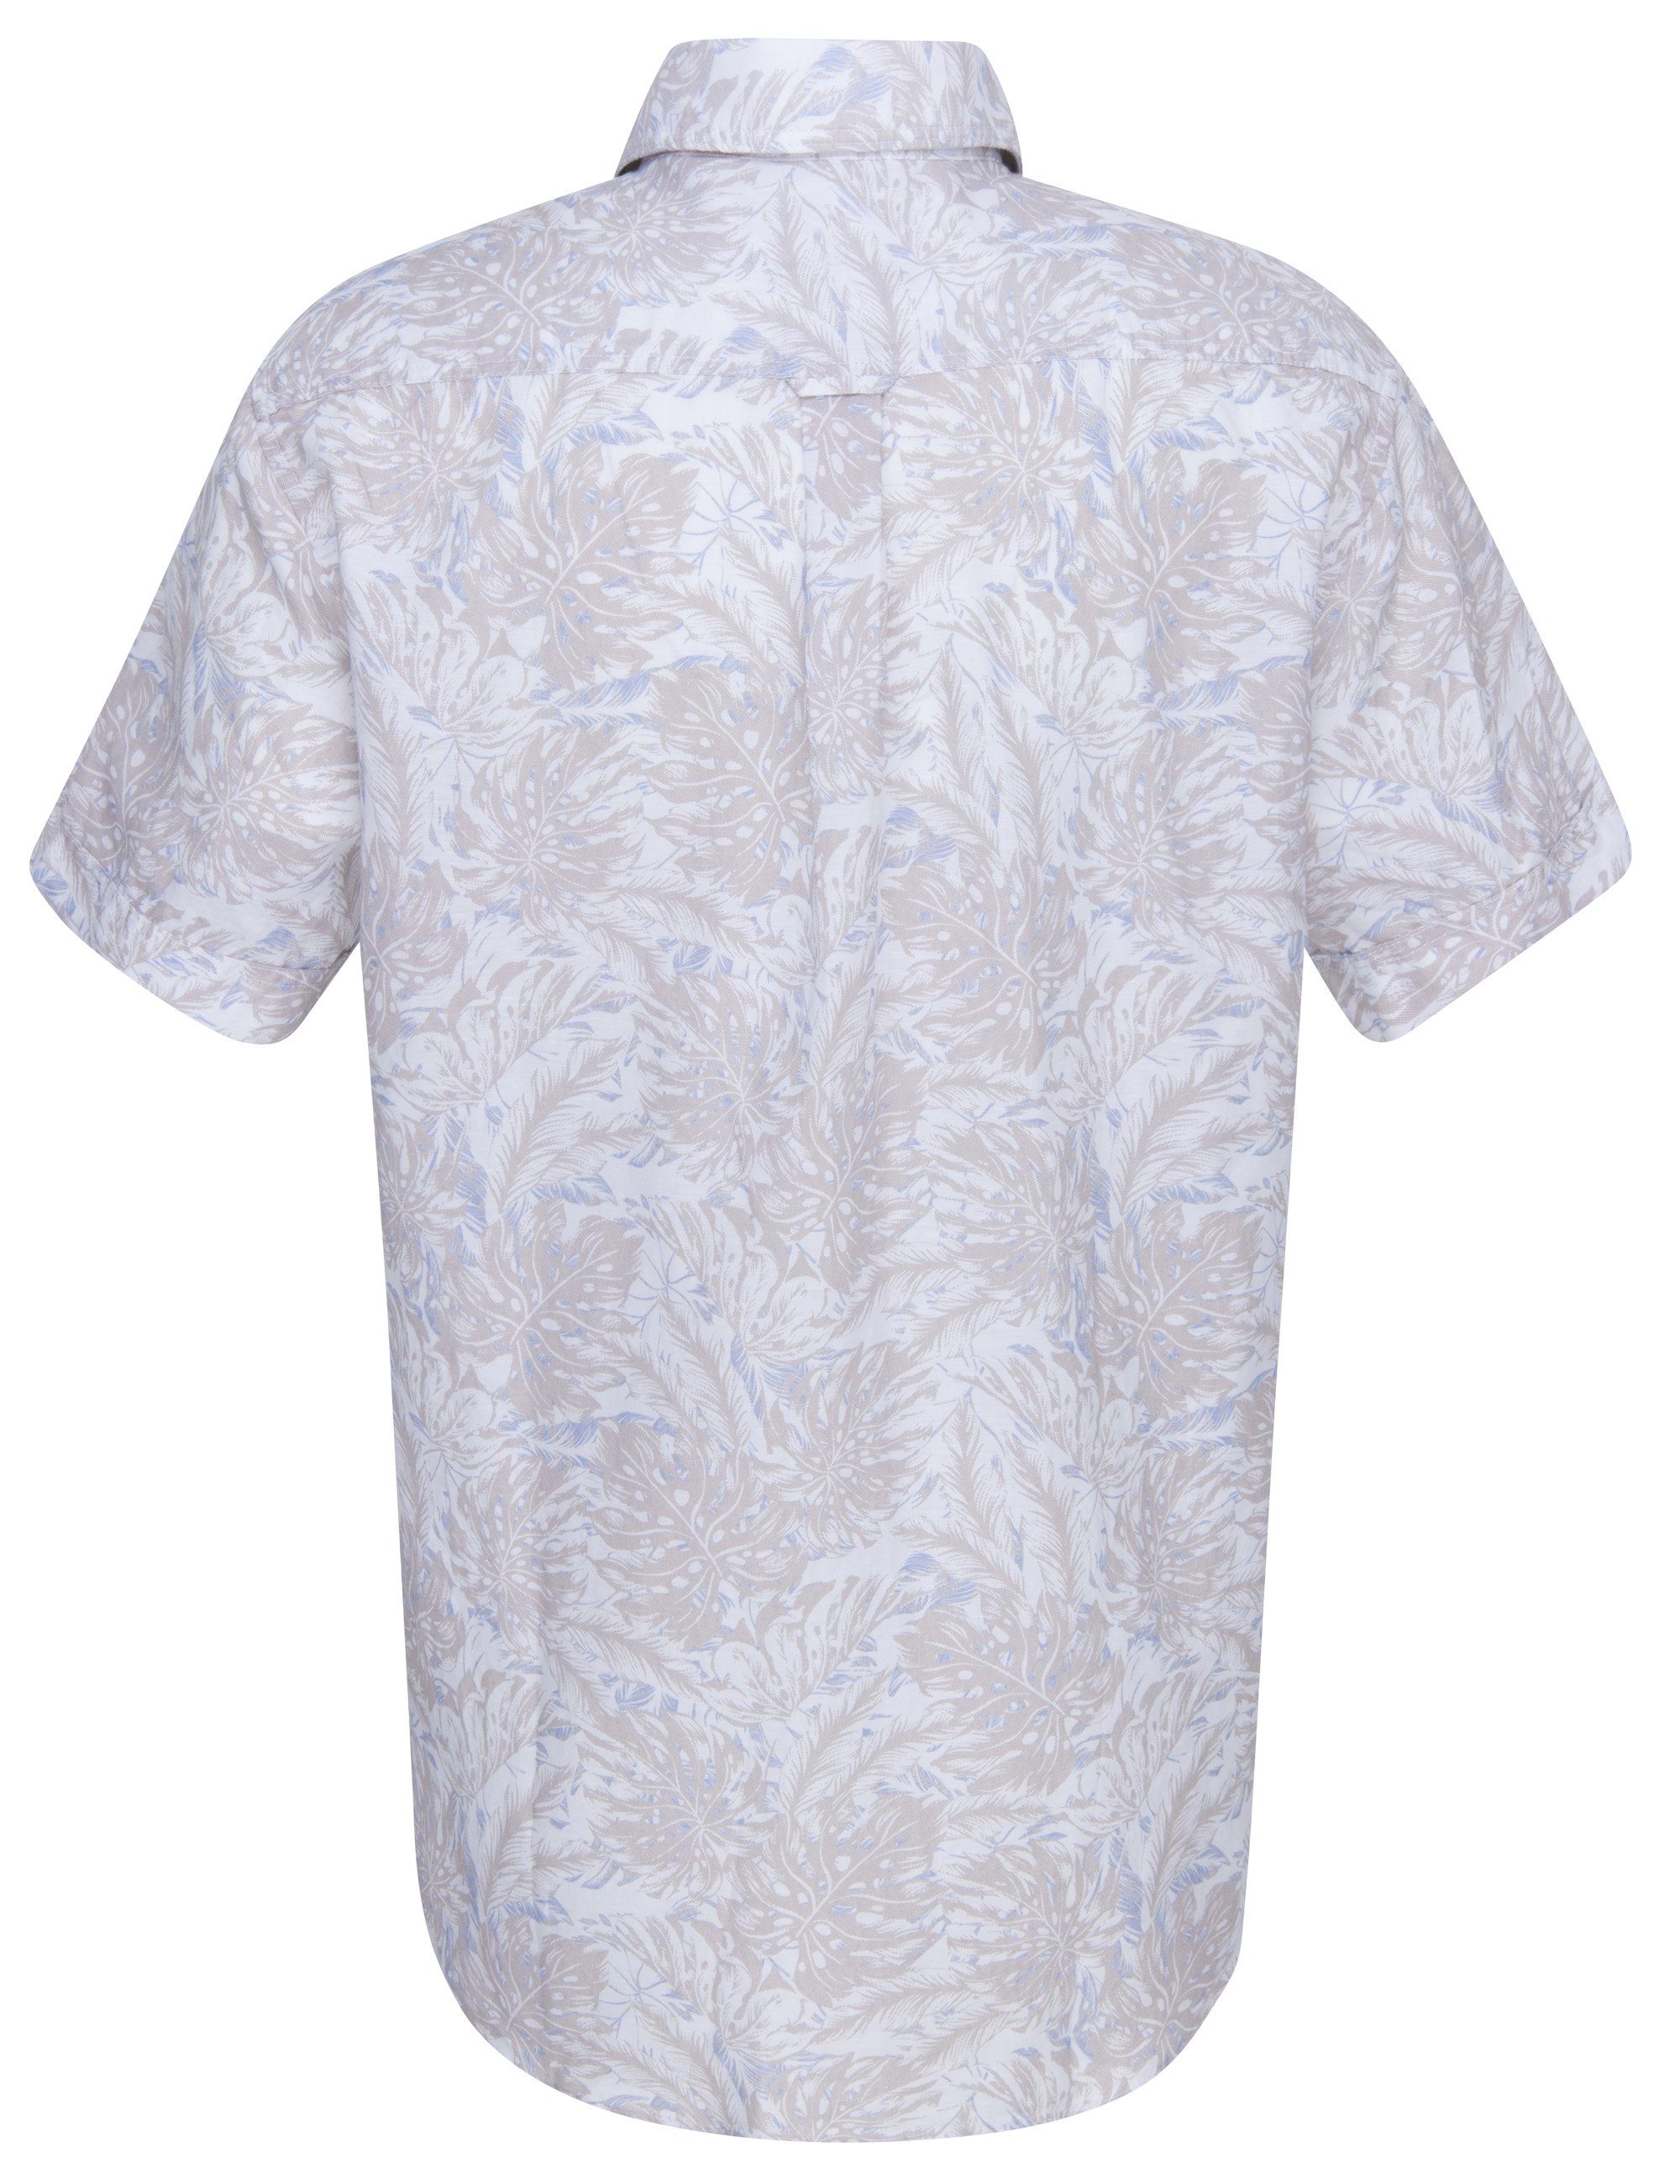 Eterna Klassische Bluse floral SHIRT Hemd UPCYCLING REGULAR Kurzarm leinen beige ETERNA FIT